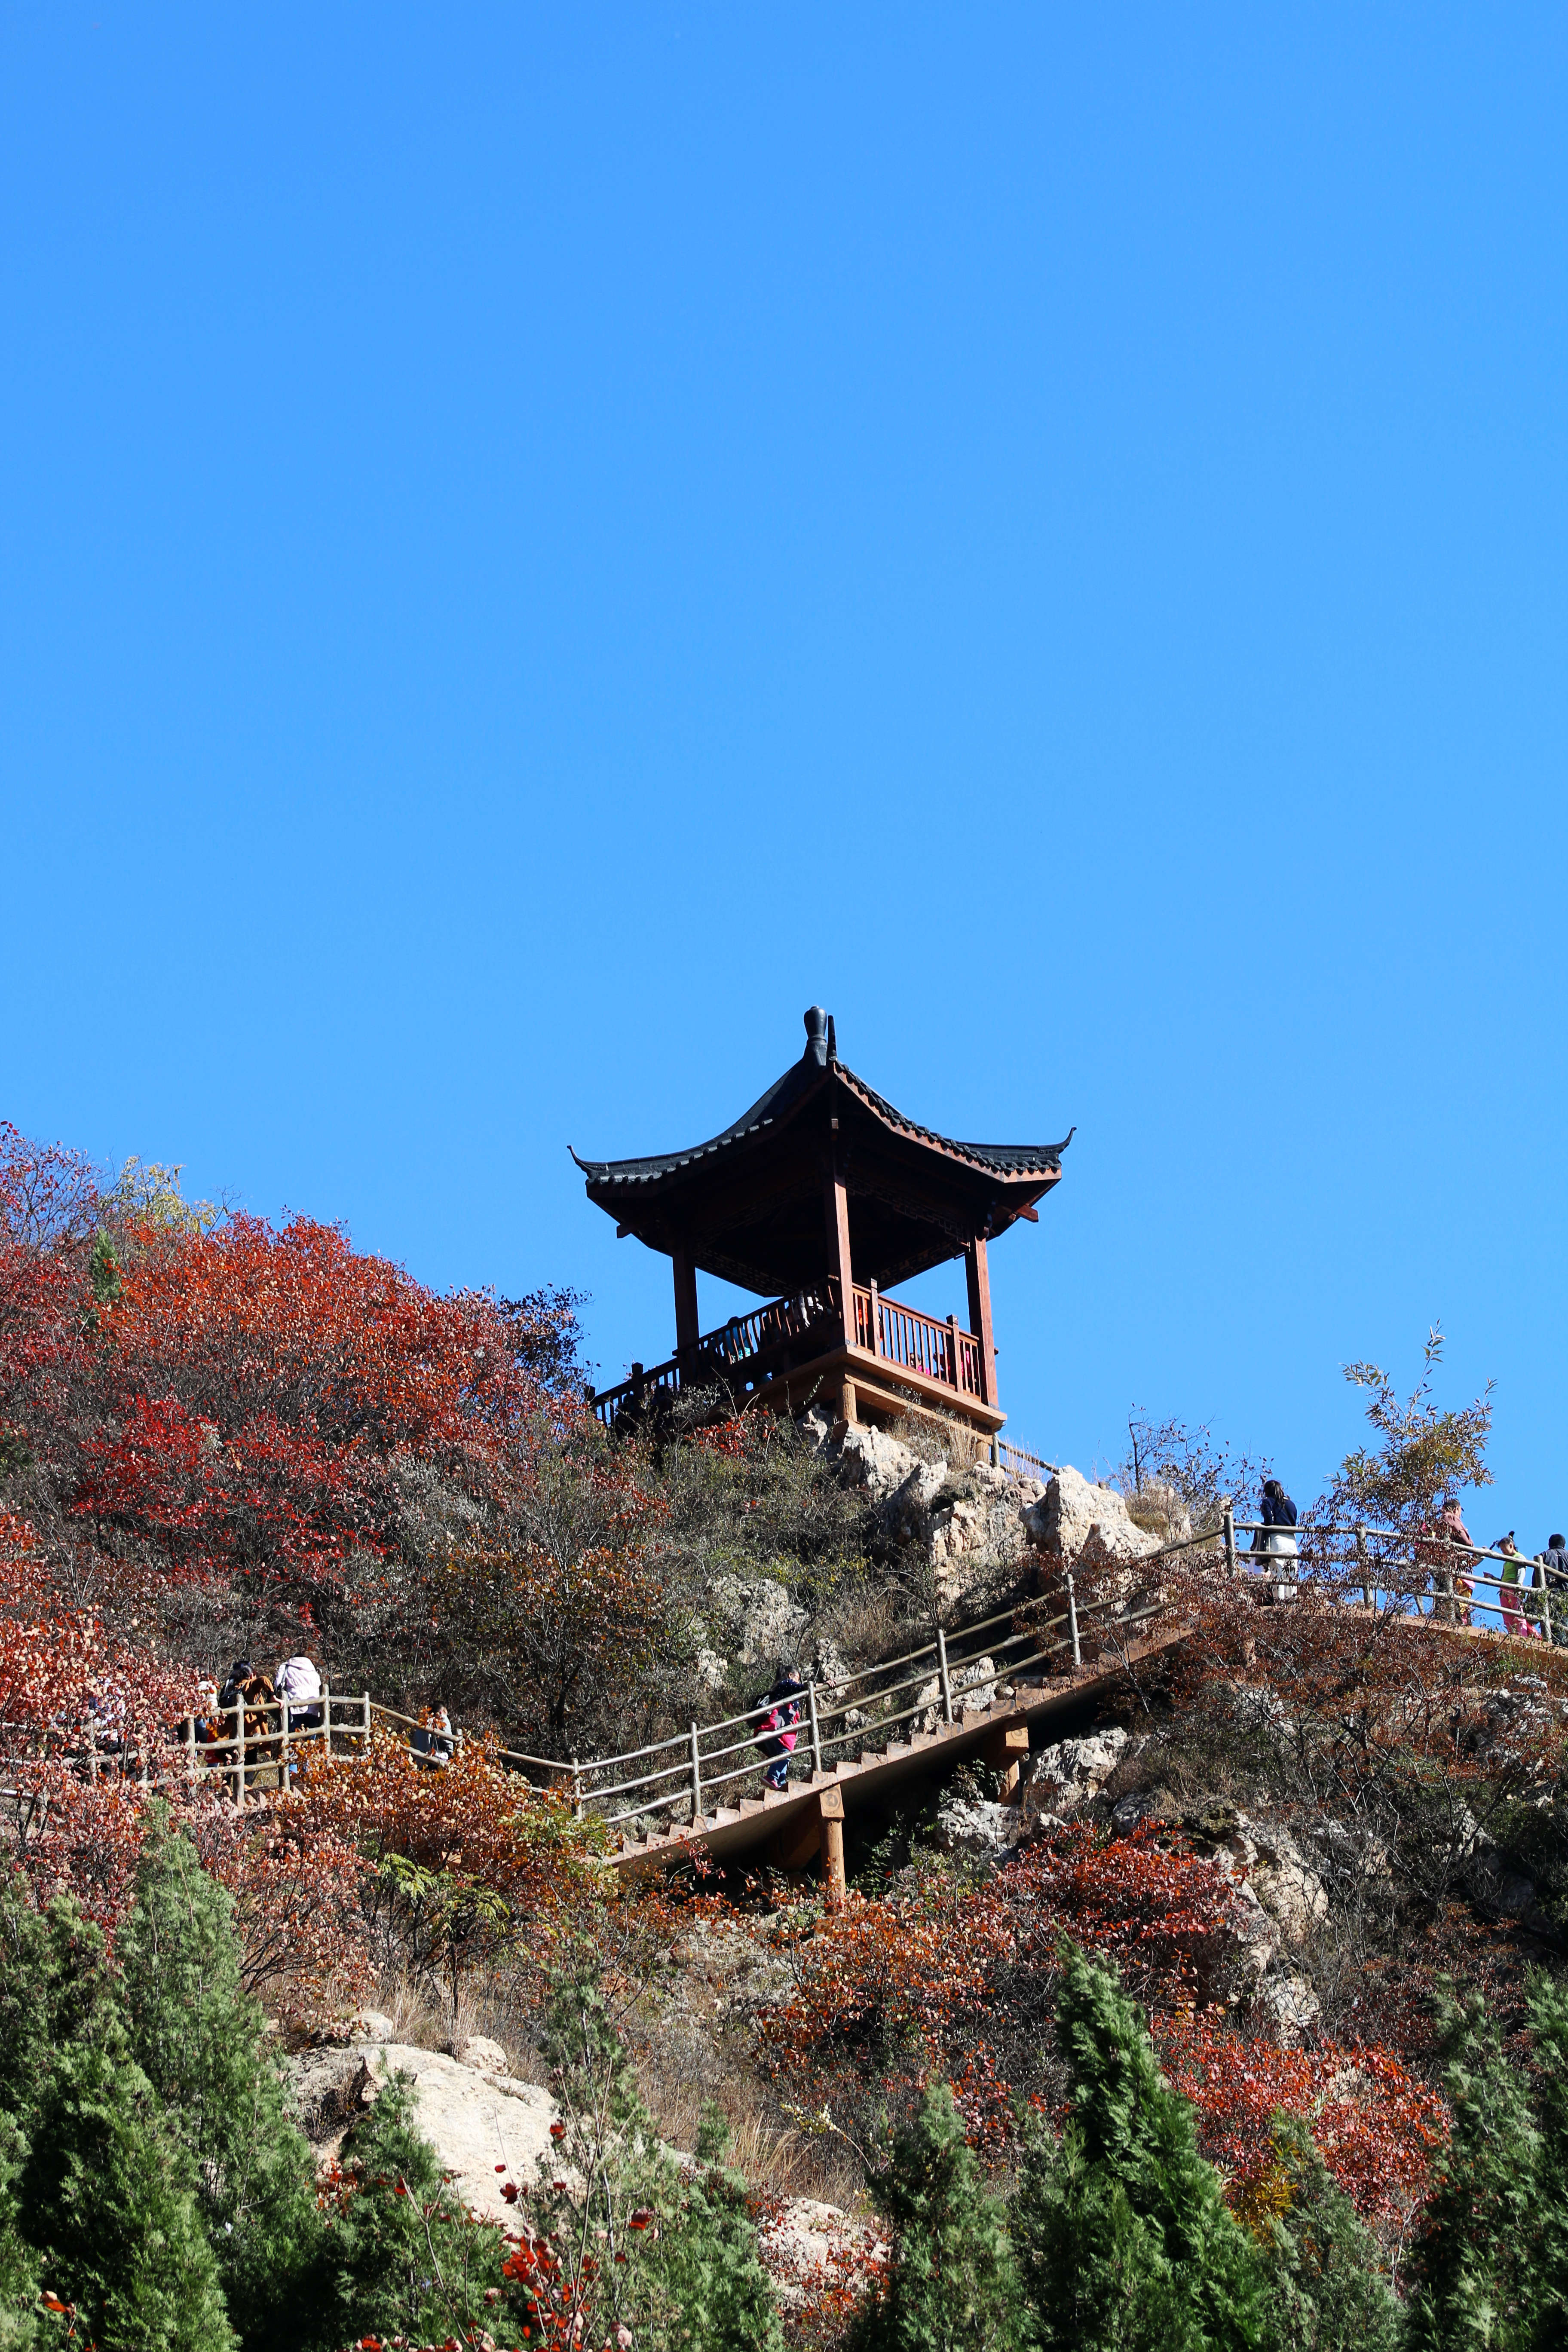 郑州周边这个小山,只需一小时车程就能看满山红叶